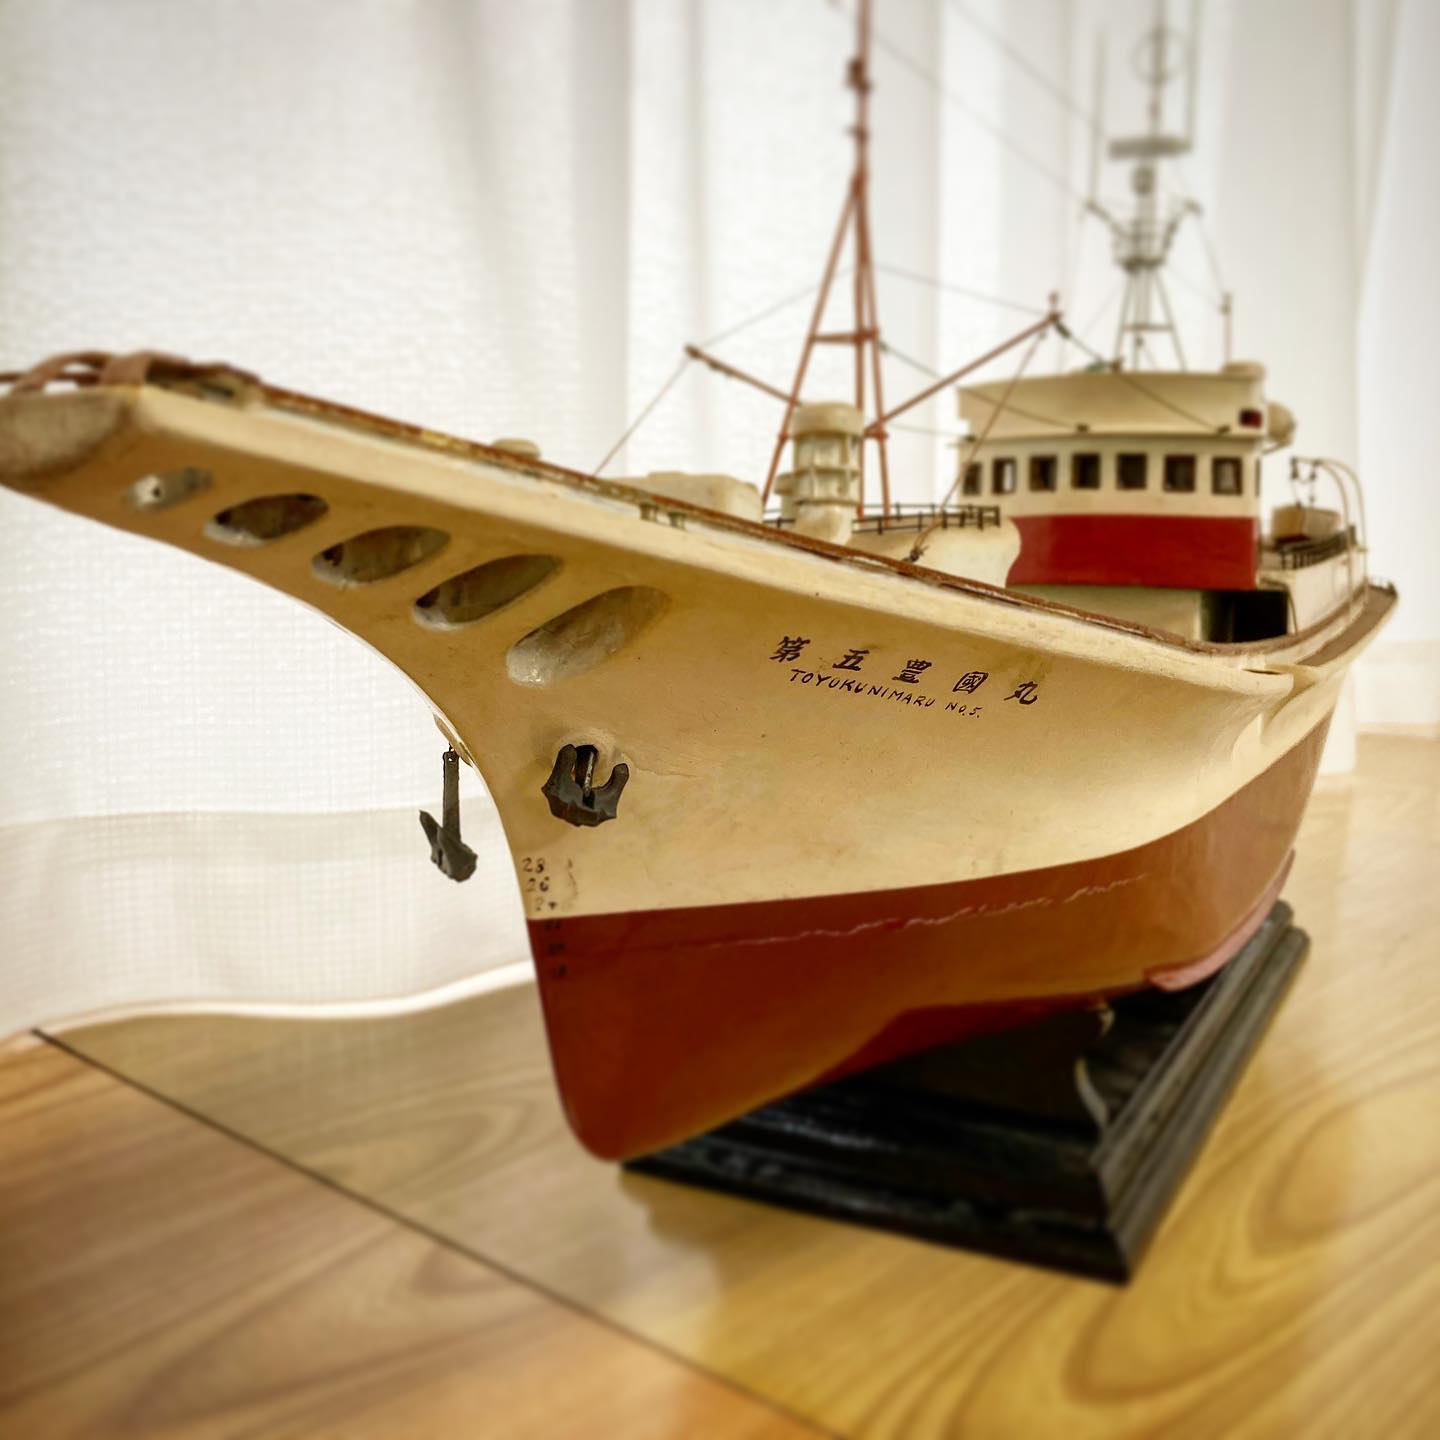 会社に飾ってある船舶模型。1963年に三保造船で建造された『第五豊國丸』50年以上前の船です。#焼津 #豊國丸 #船舶模型 #カツオ一本釣り #カツオ一本釣り漁船